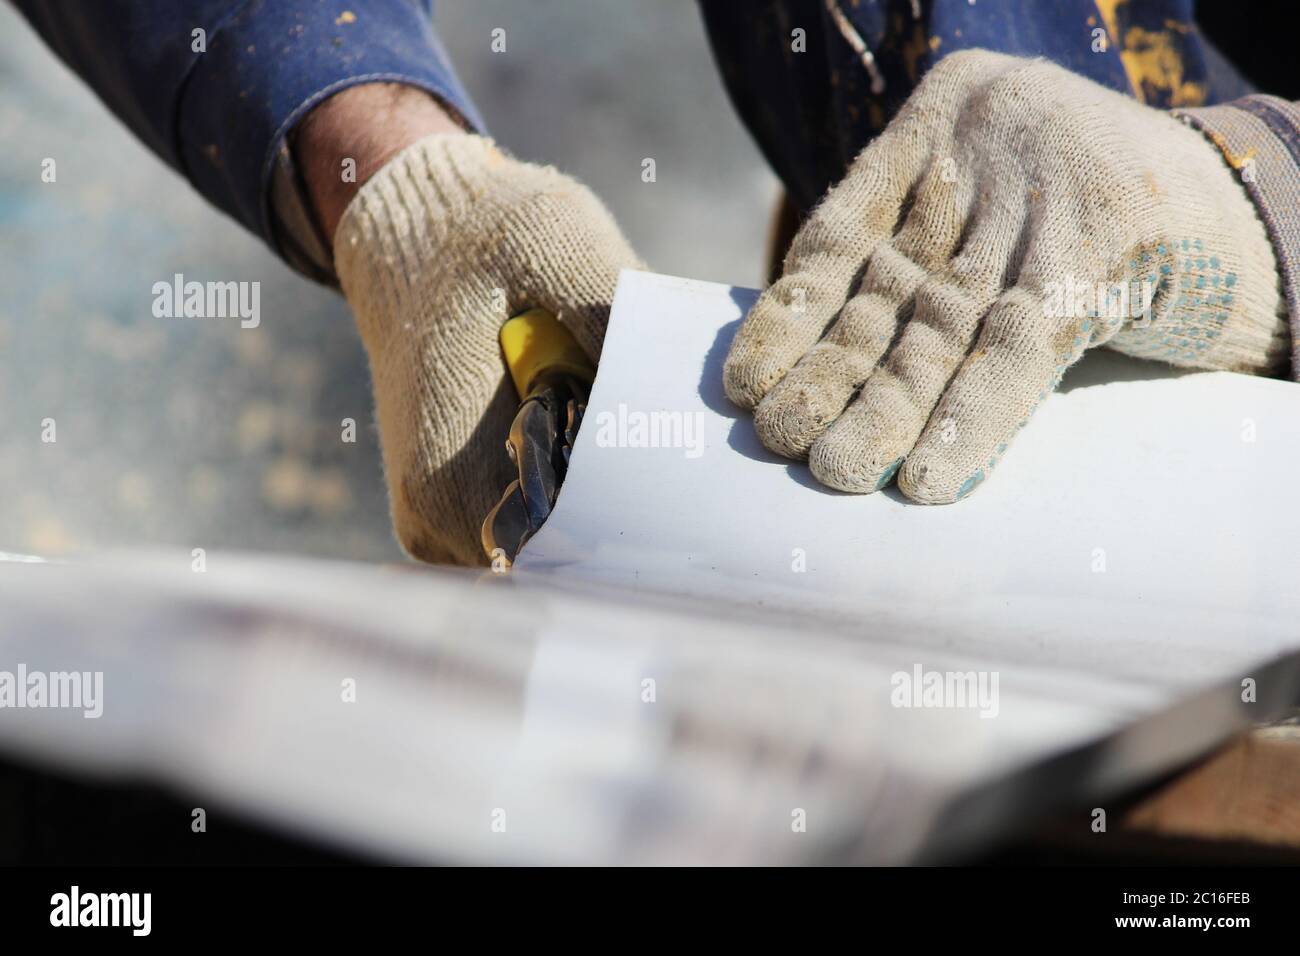 El trabajador hace el corte de ventanas en el edificio restaurado de la ciudad, corta la chapa metálica de la pendiente con tijeras. Foto de stock